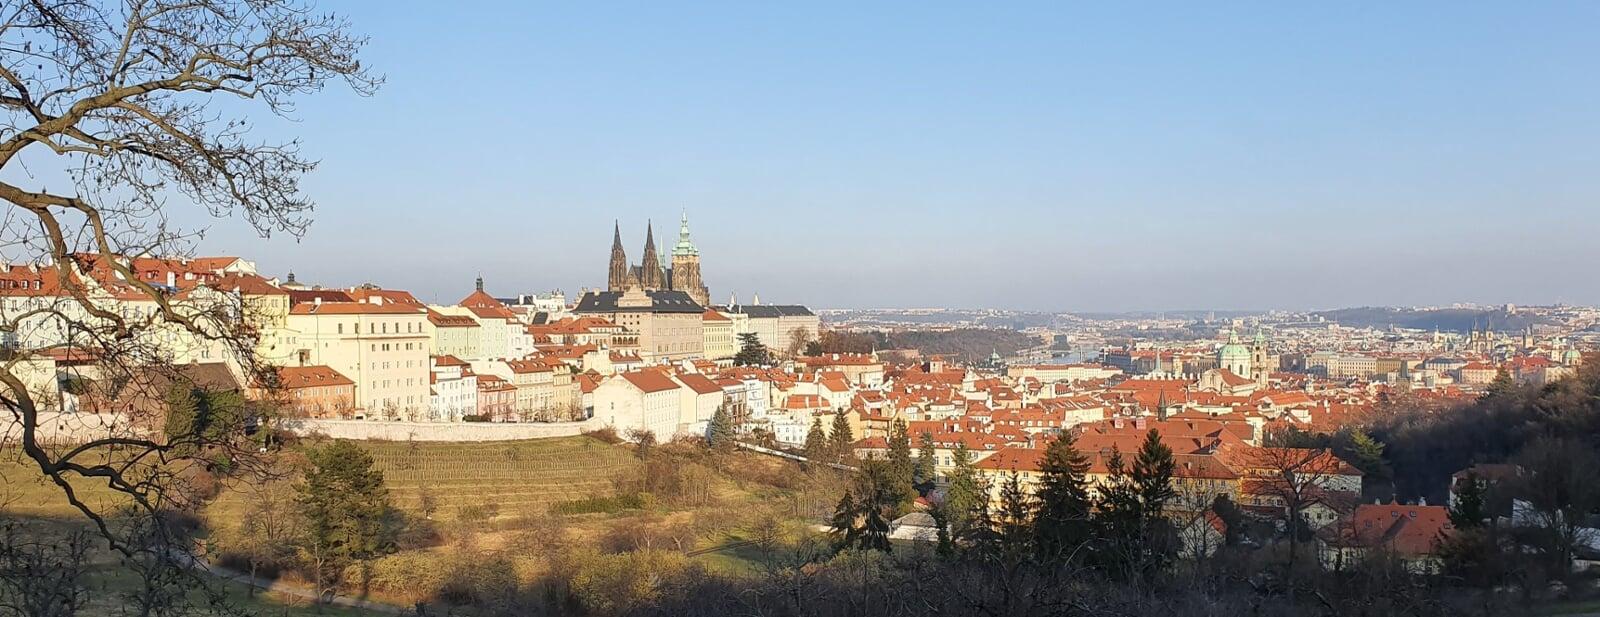 Czech republic Prague